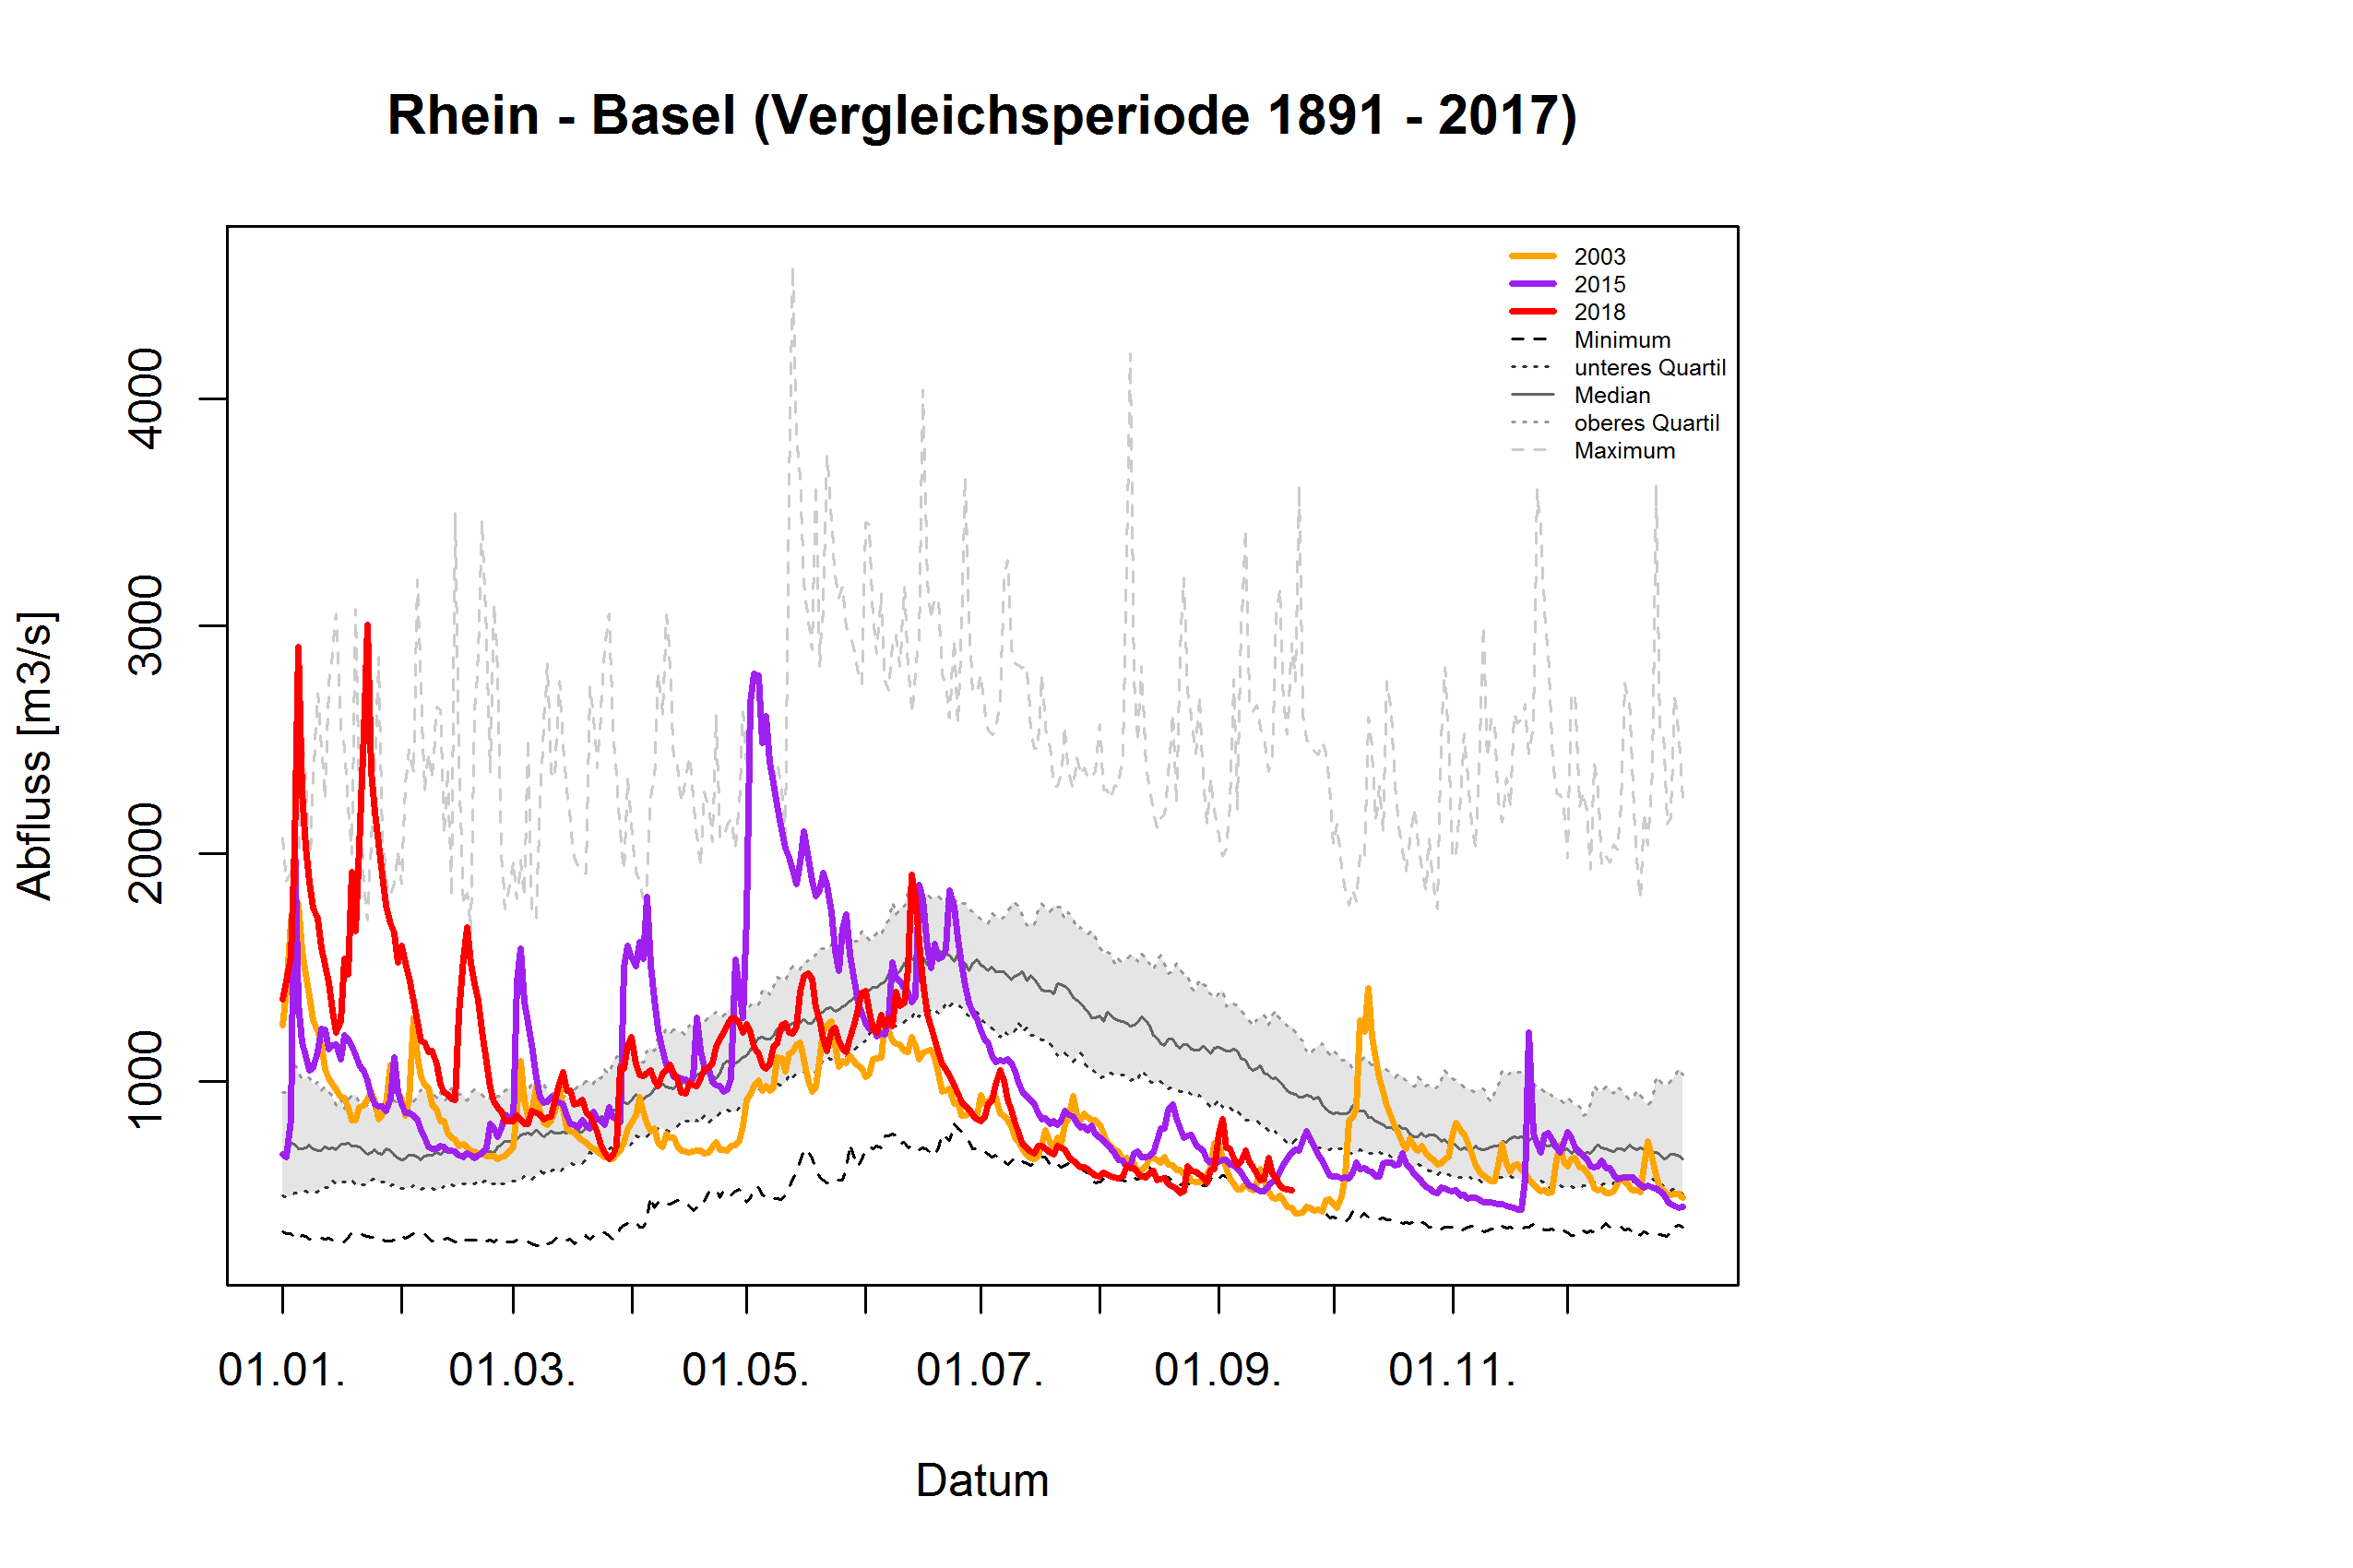 Rhein - Basel: Vergleichsperiode 1891 - 2017